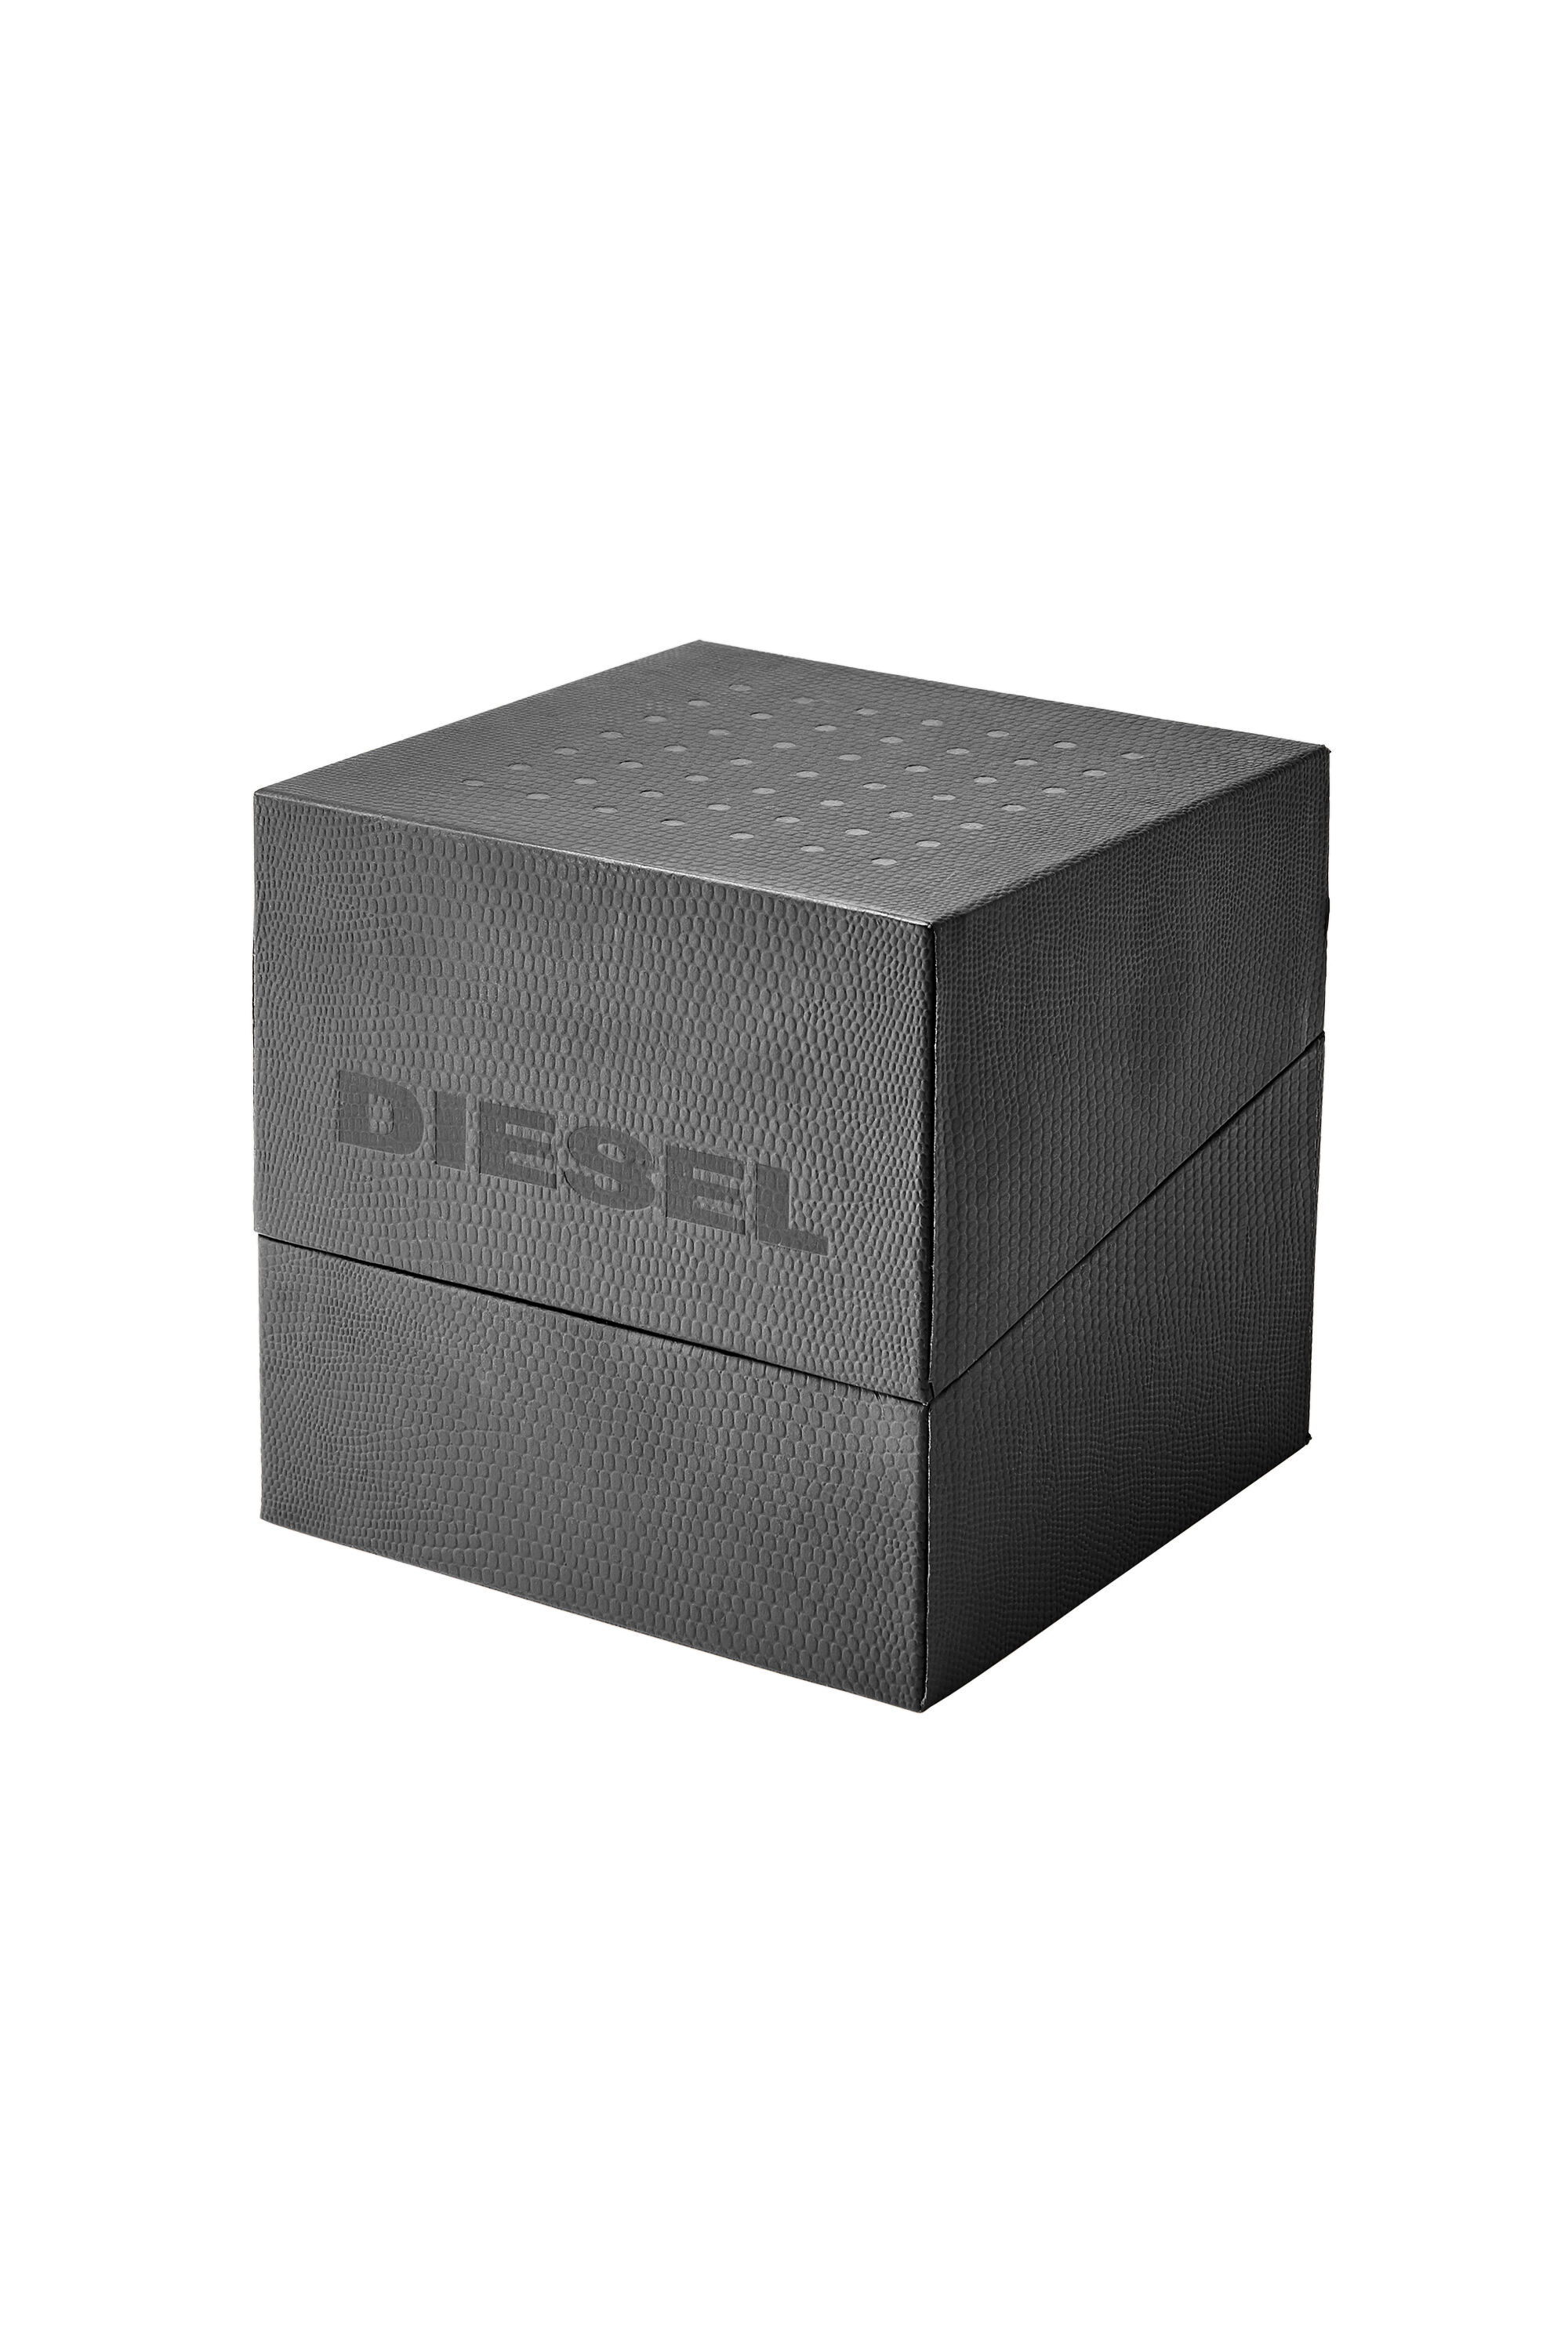 Diesel - DZ4524, Negro - Image 4